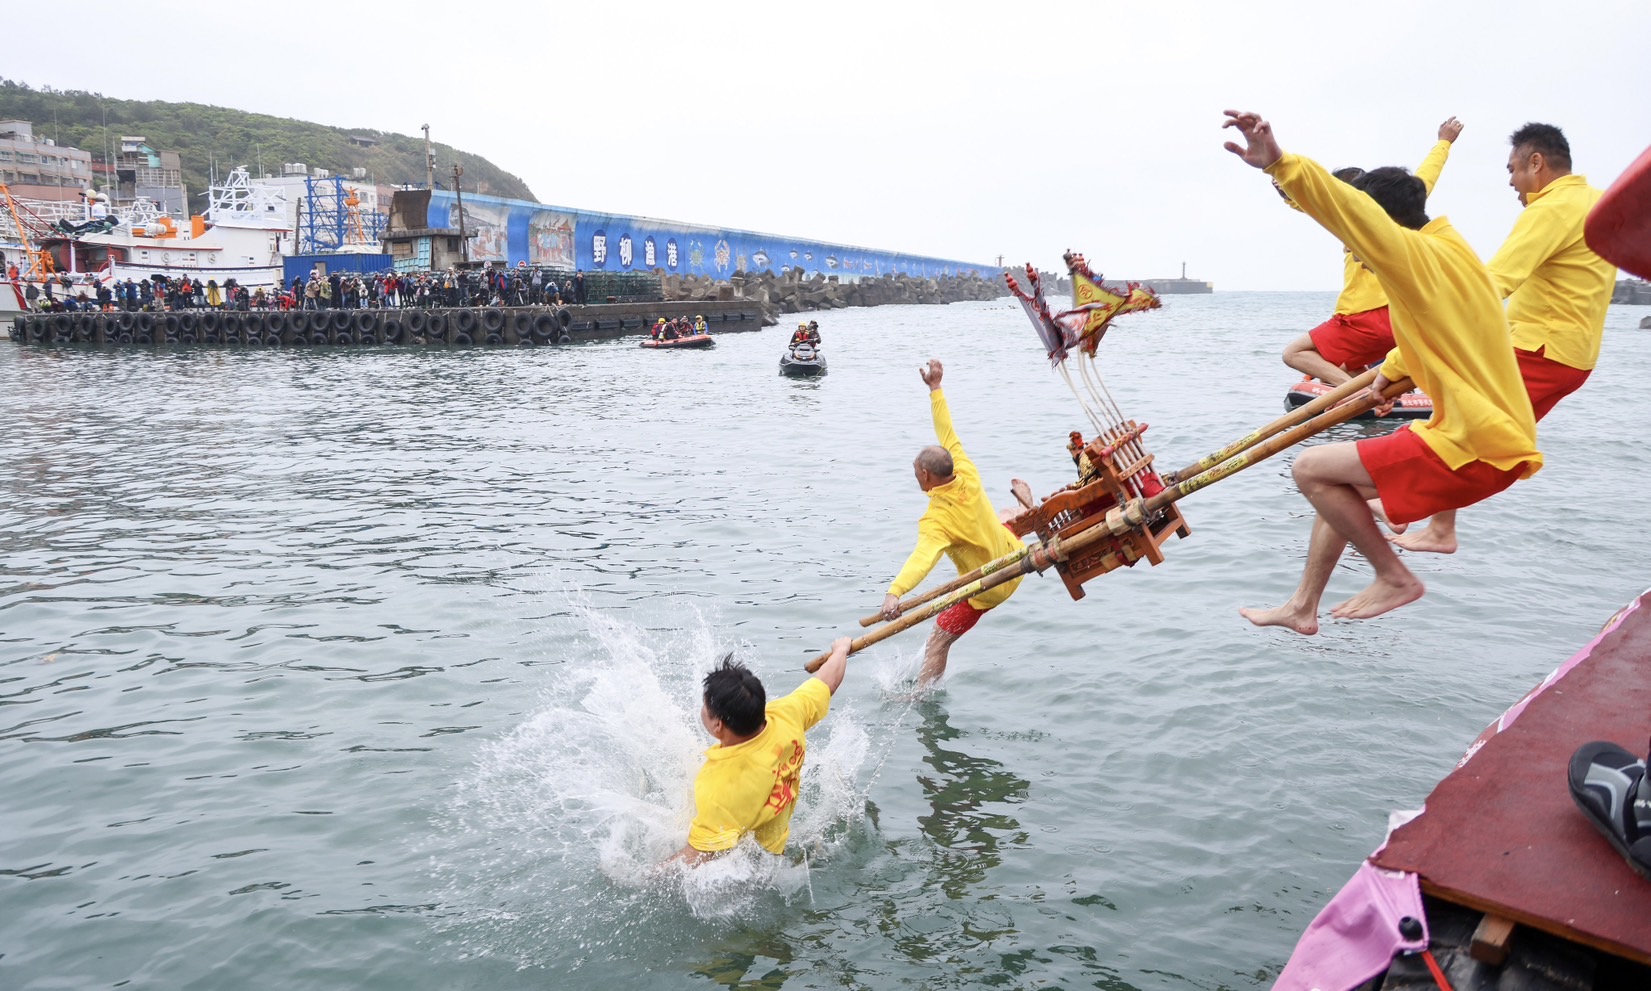  野柳神明淨港文化祭 百年傳統跳水祈平安豐收 